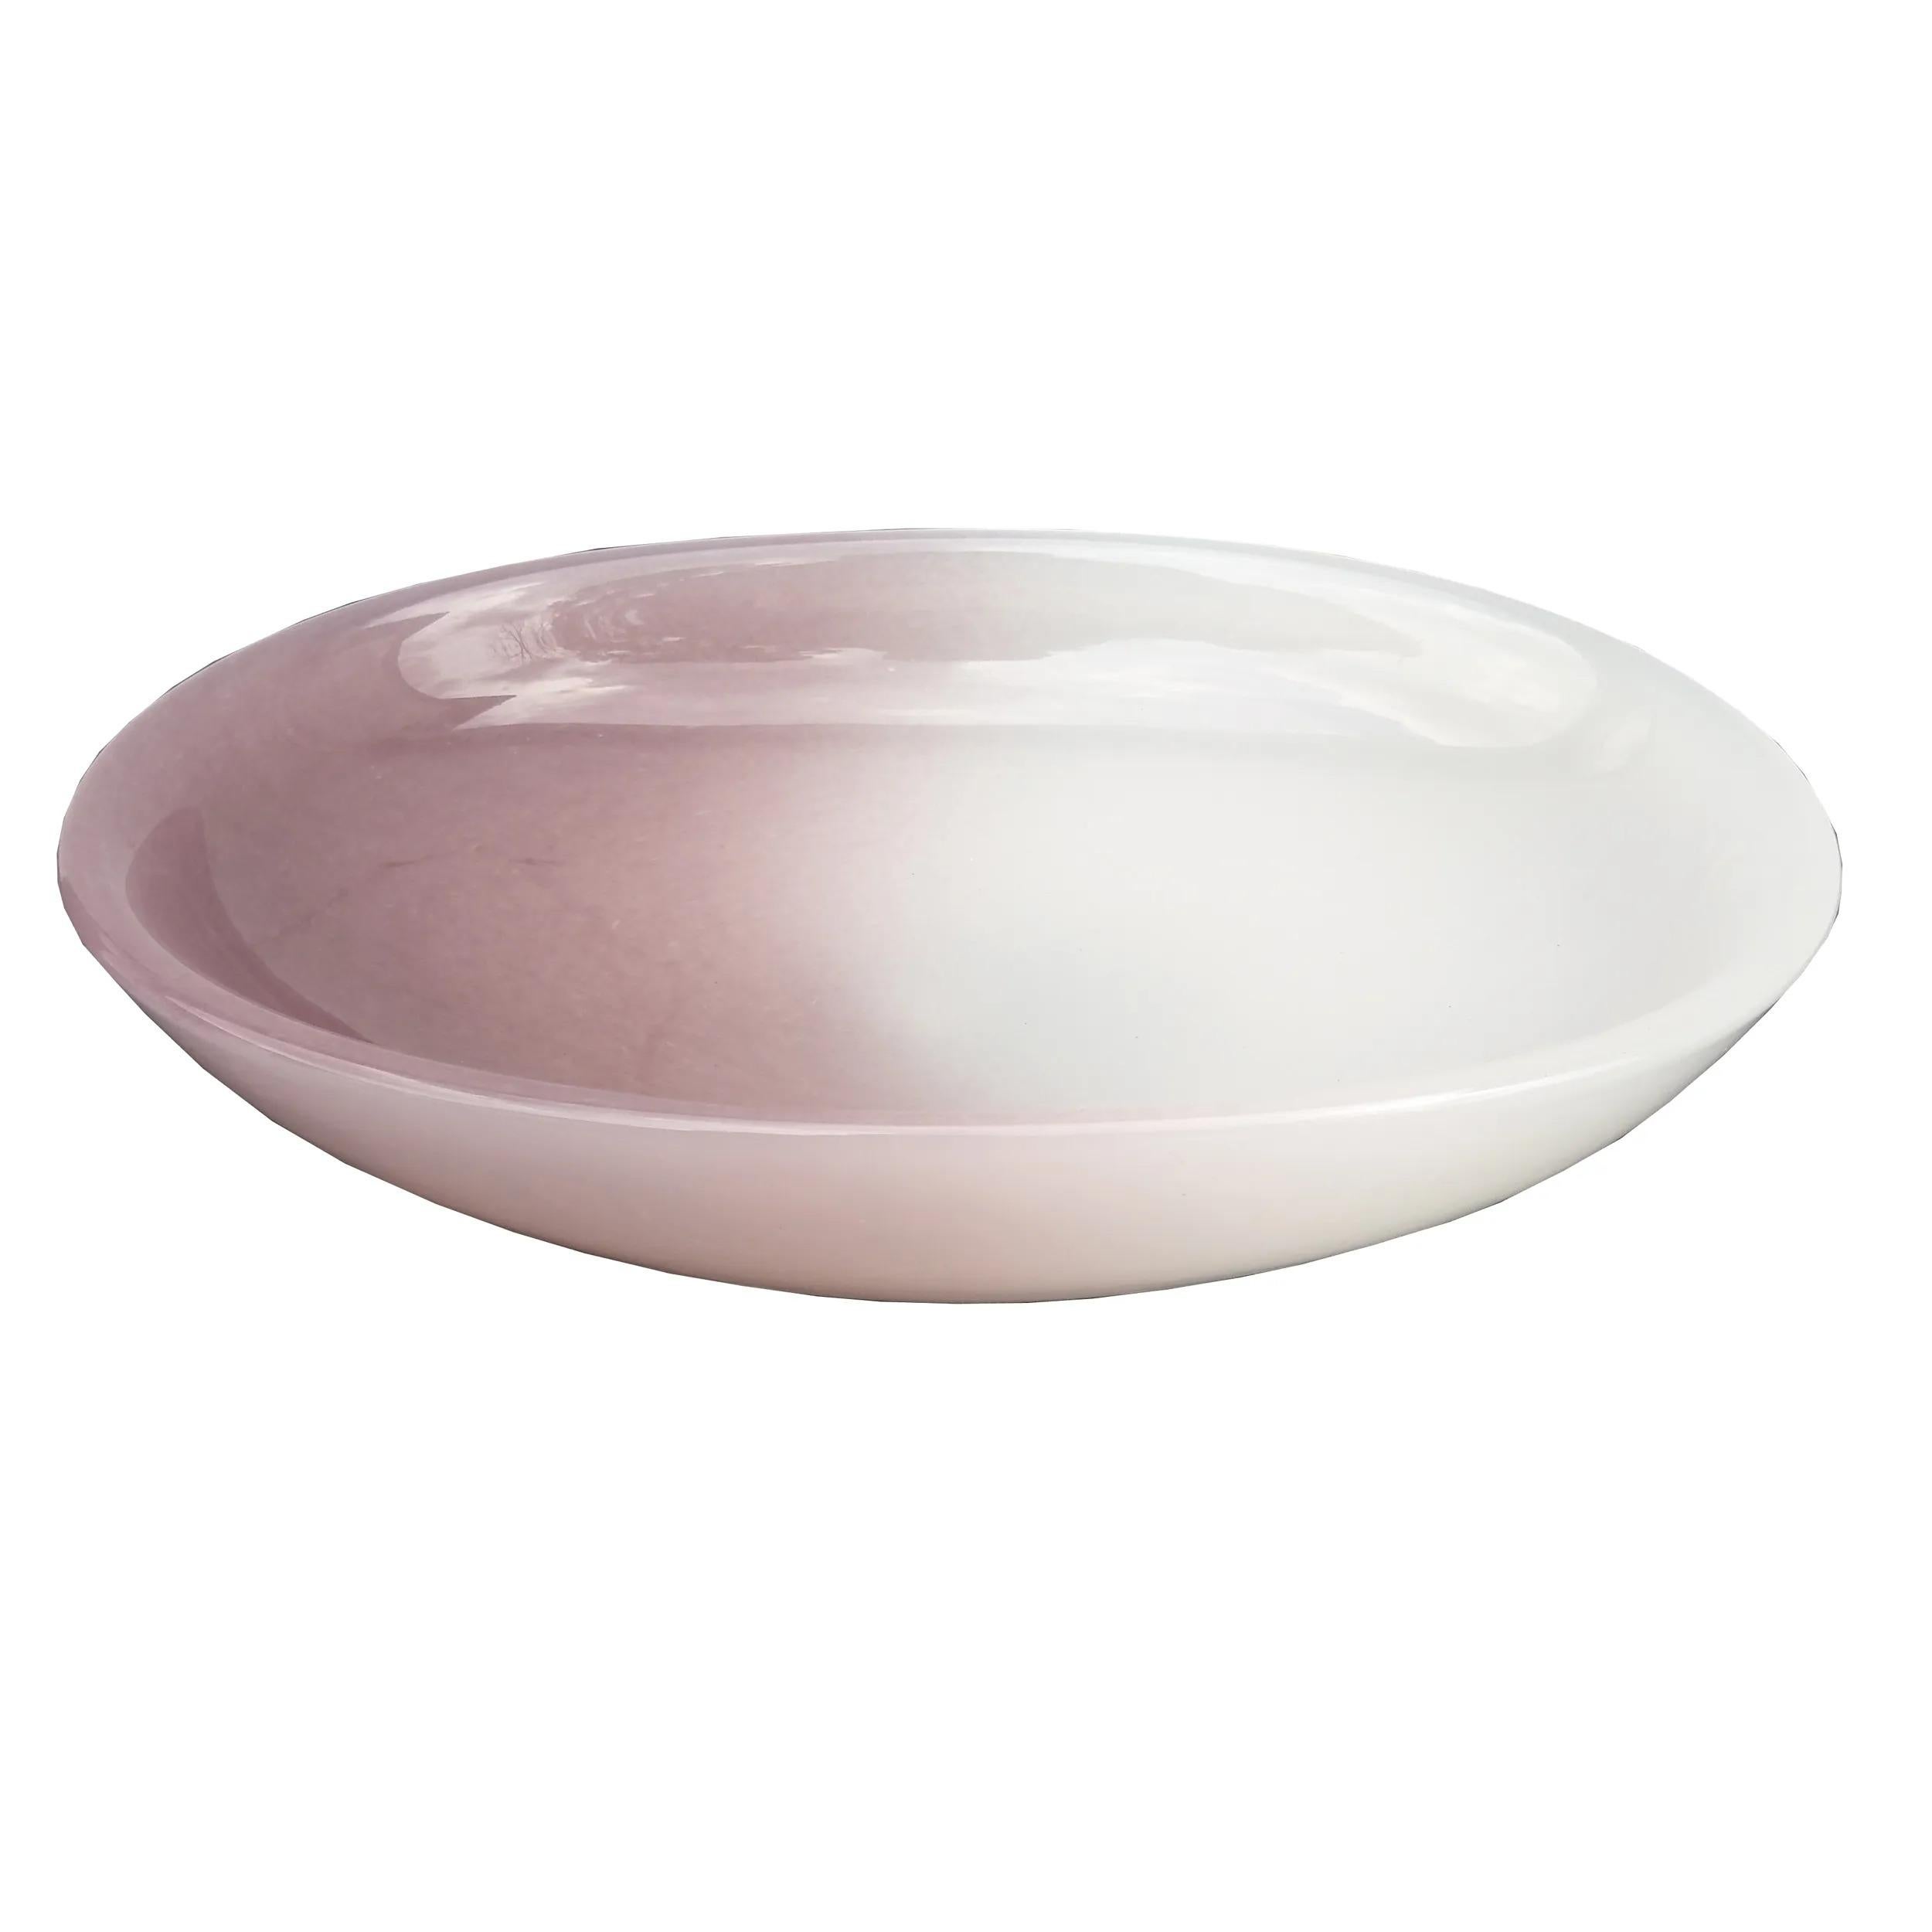 Auffallend Murano mundgeblasen 2 Tone weiß italienische Kunstglas Schüssel.

Schöne Murano mundgeblasen Opal italienische Kunst Glasschale. Kann als Ausstellungsstück auf jedem Tisch verwendet werden. Maße: 13